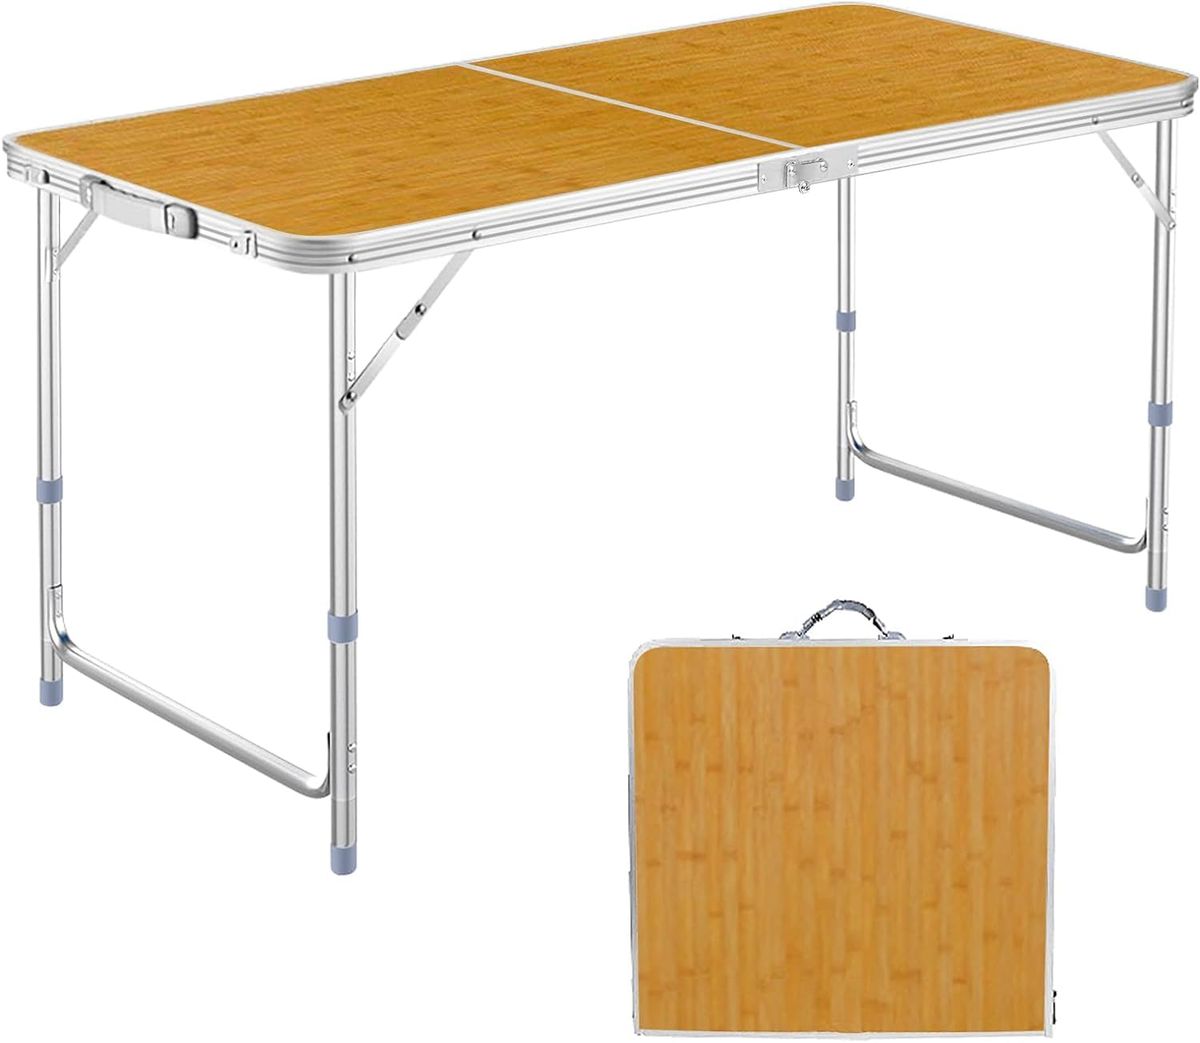 アウトドア テーブル キャンプ テーブル 折りたたみ 高さ3段階調整可能 120×60×(55-62-70)cm ピクニック レジャー キャンプ用 LK (竹色-B)